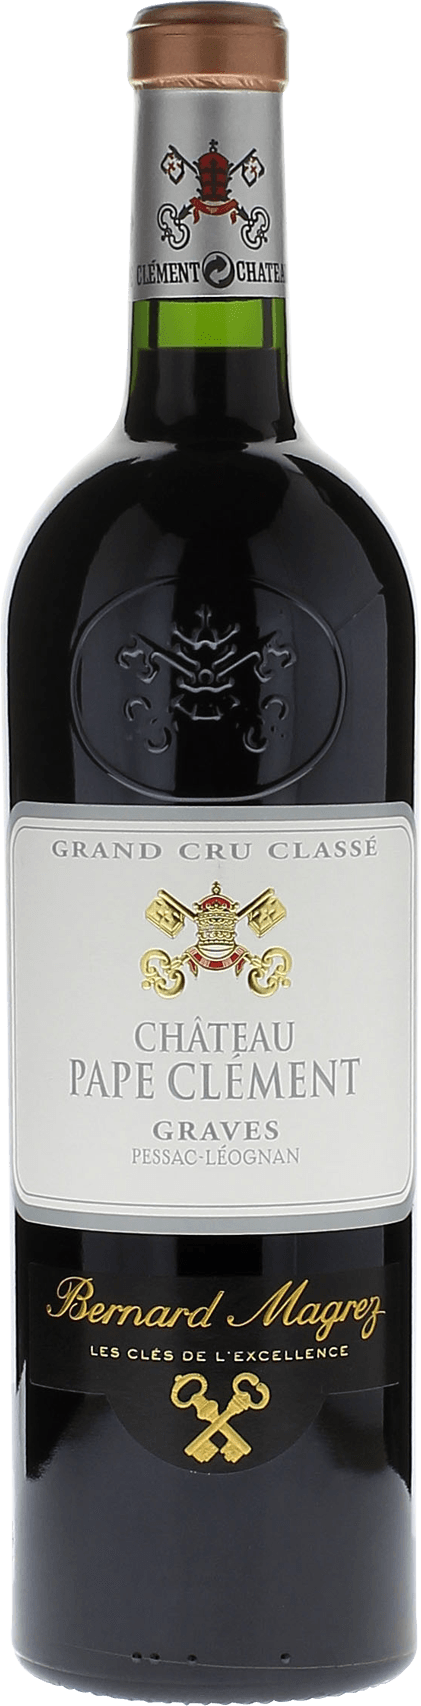 Pape clement rouge 2015 Grand Cru Class Graves, Bordeaux rouge